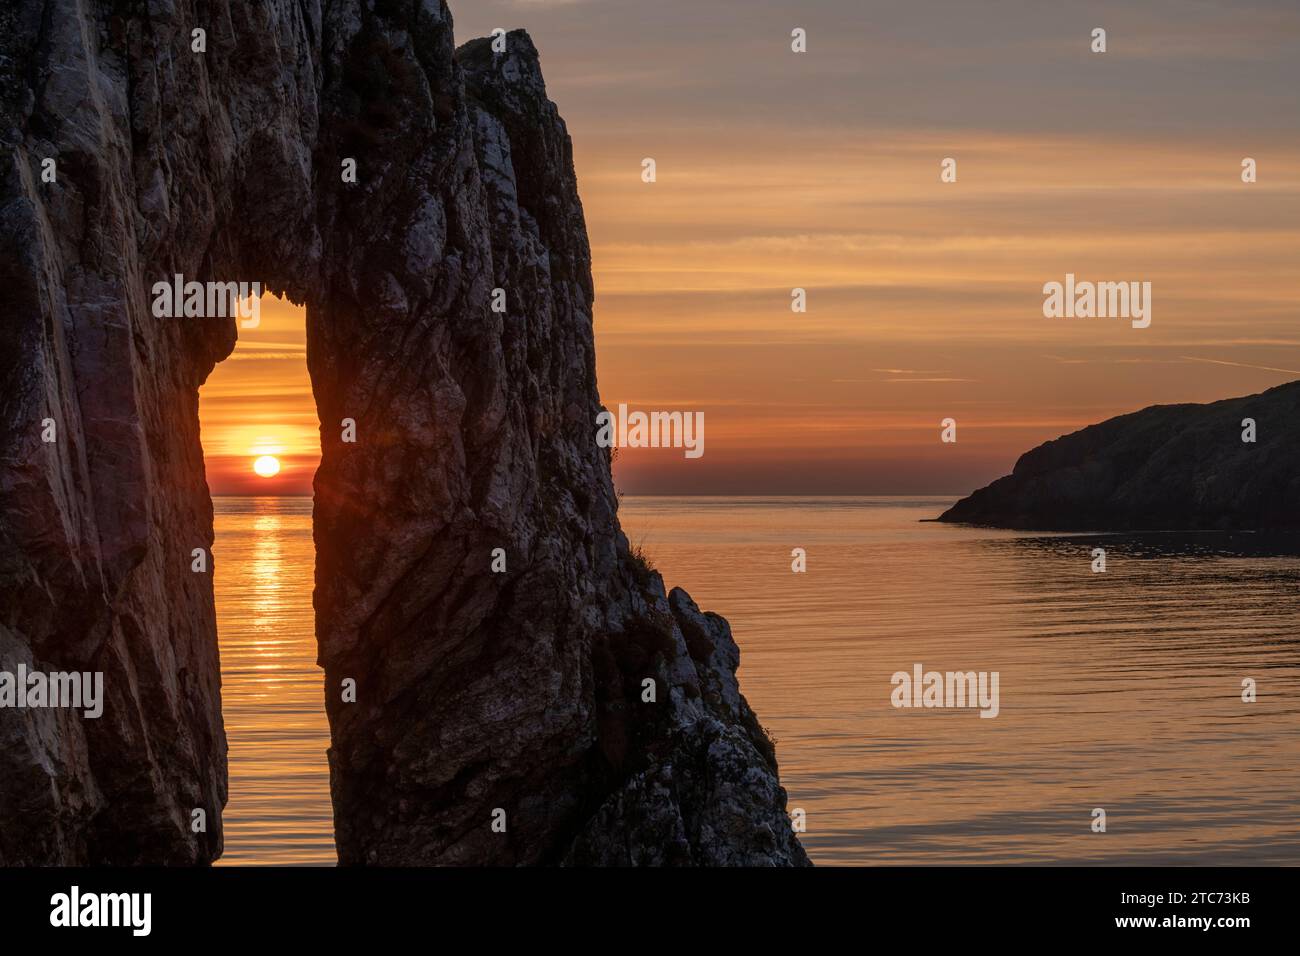 Lever du soleil à travers une arche rocheuse sur le site victorien briqueterie à Porth Wen, Anglesey, pays de Galles, Royaume-Uni. Printemps (mai) 2019. Banque D'Images